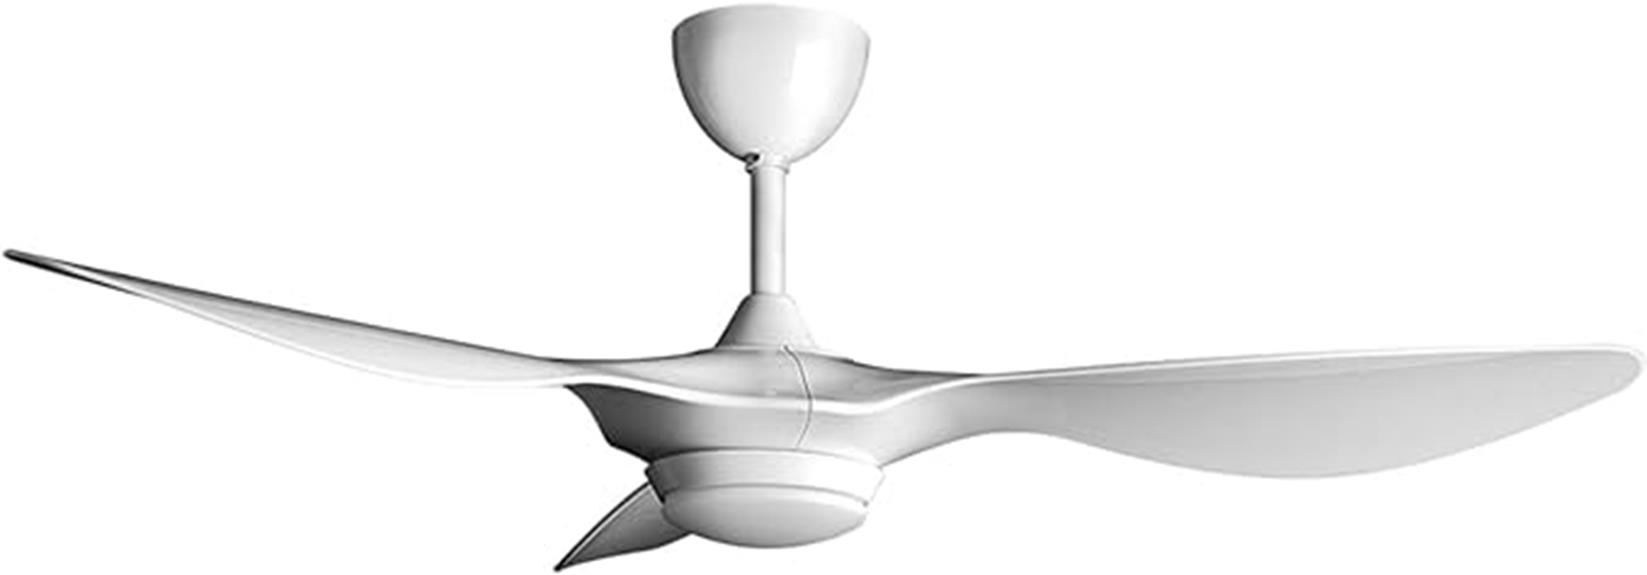 smart white ceiling fan